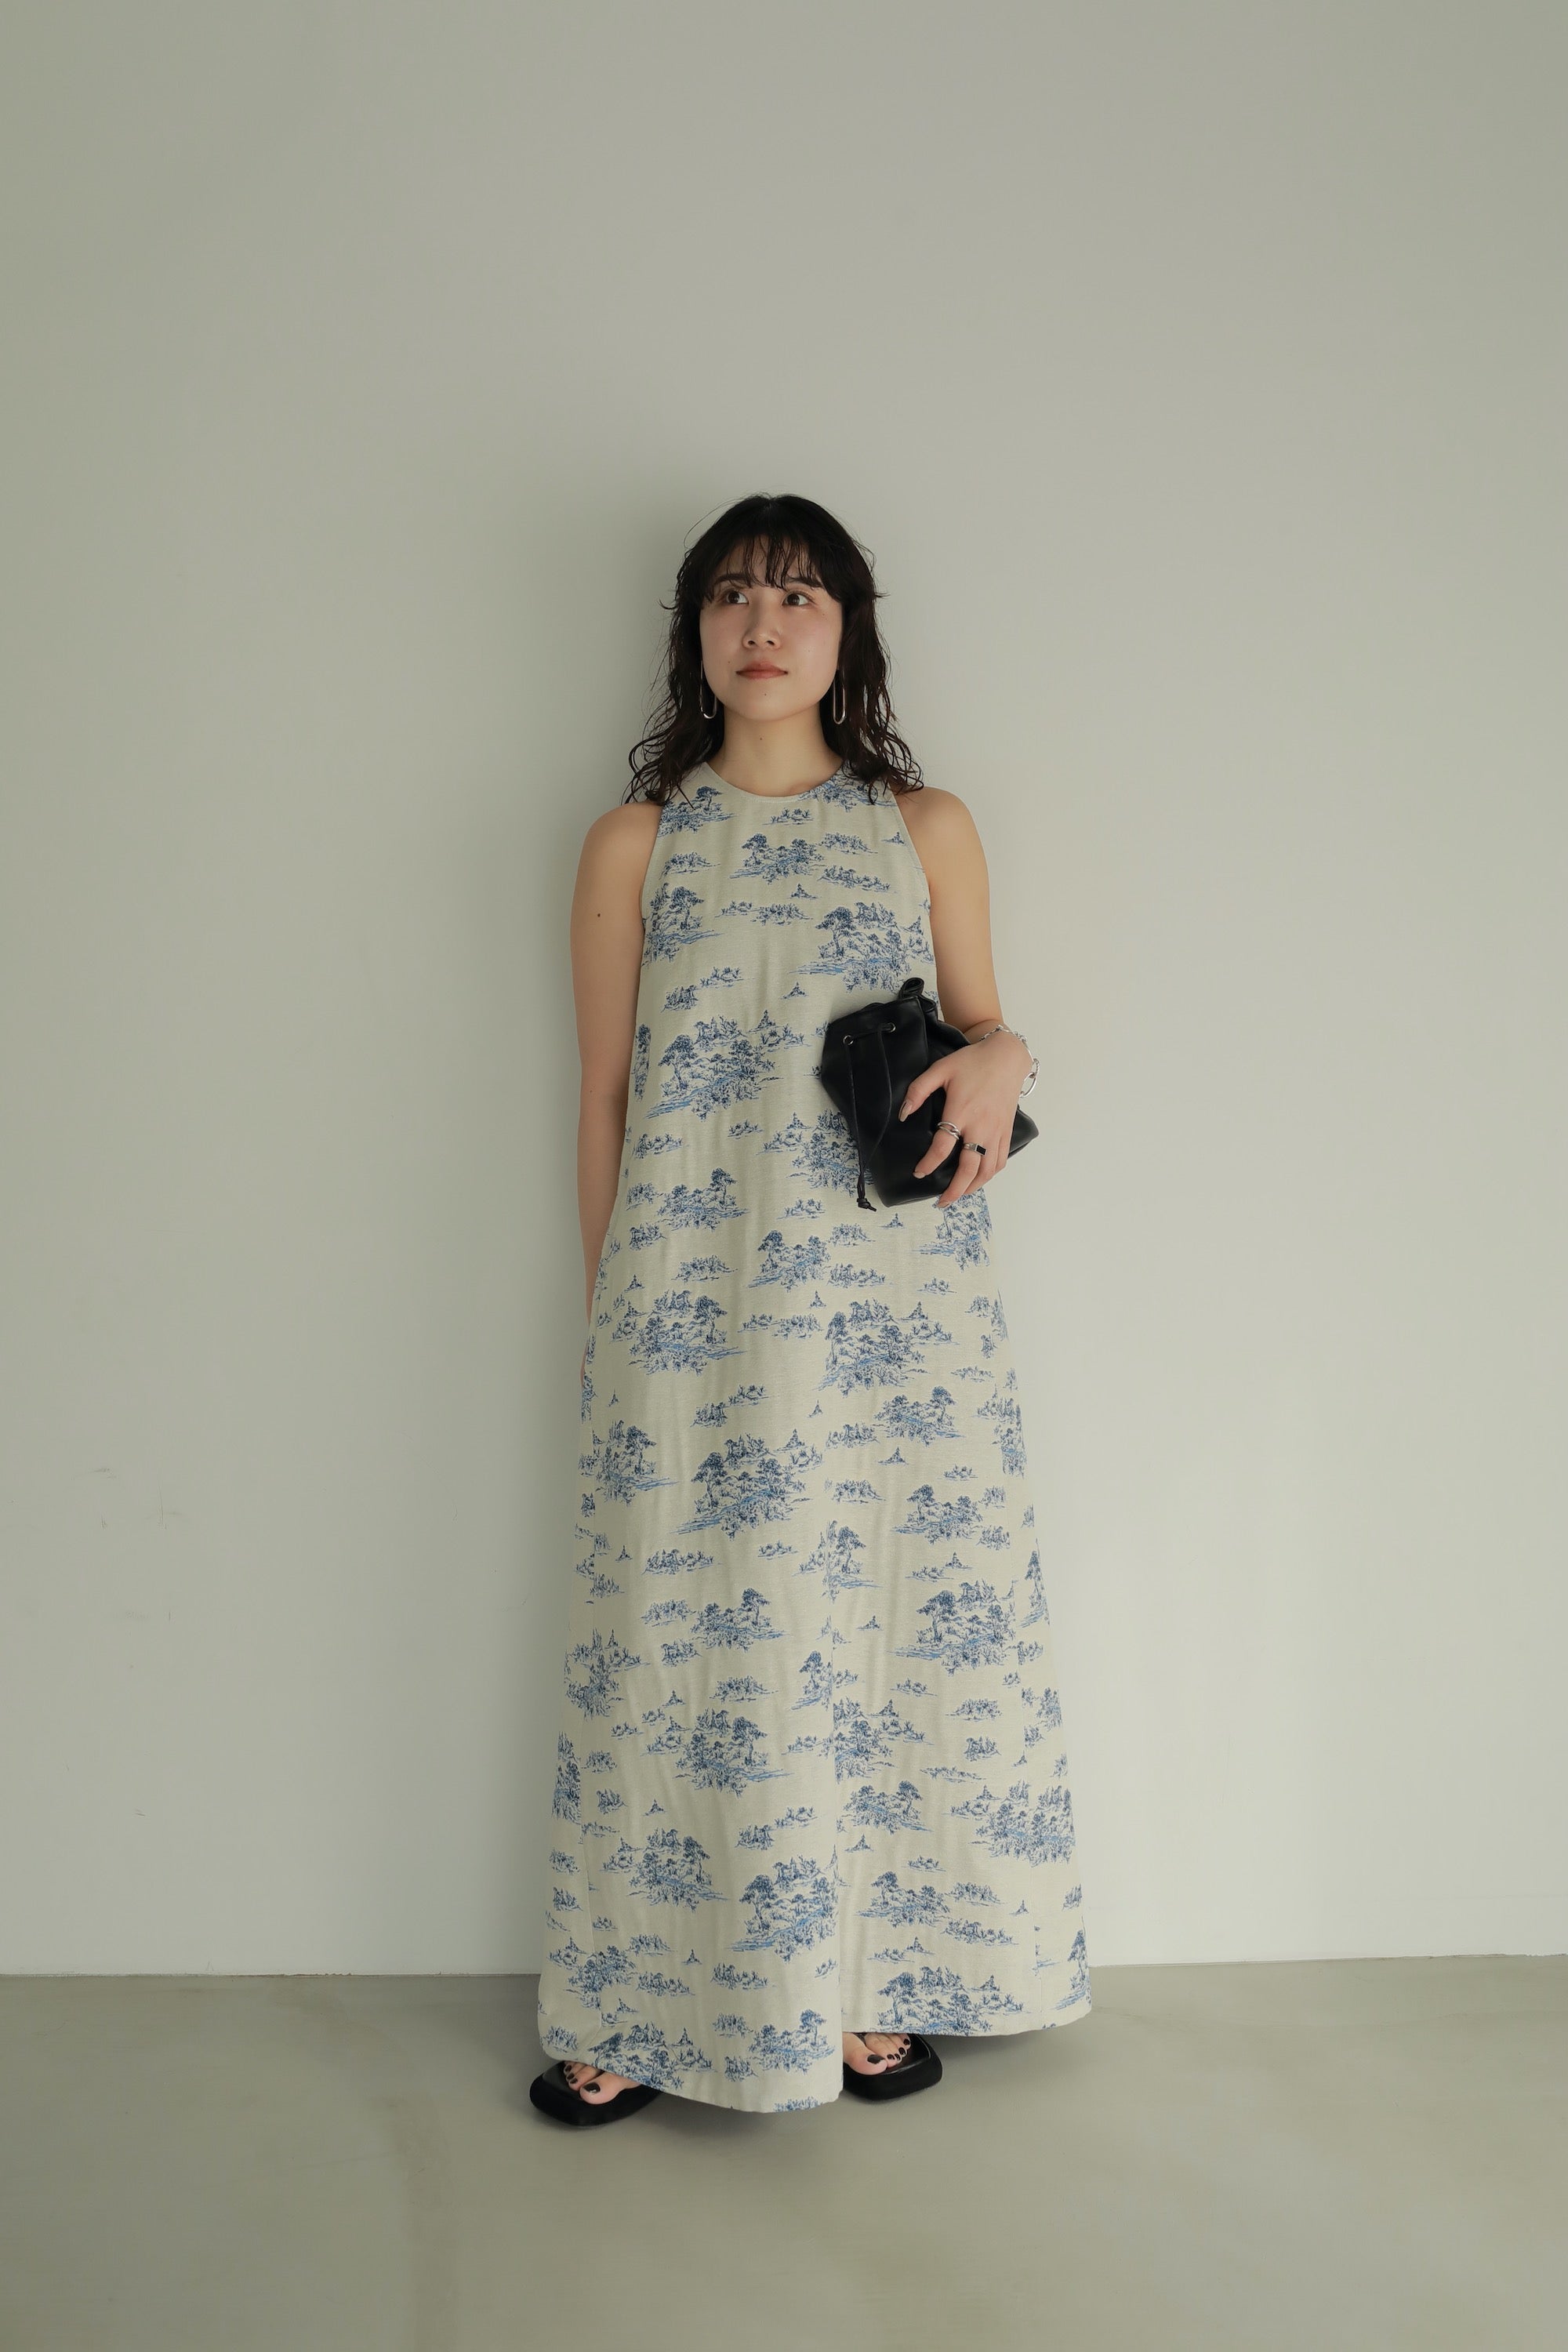 限定 クーポン10% 土日限定価格【louren】lakeside jacquard dress